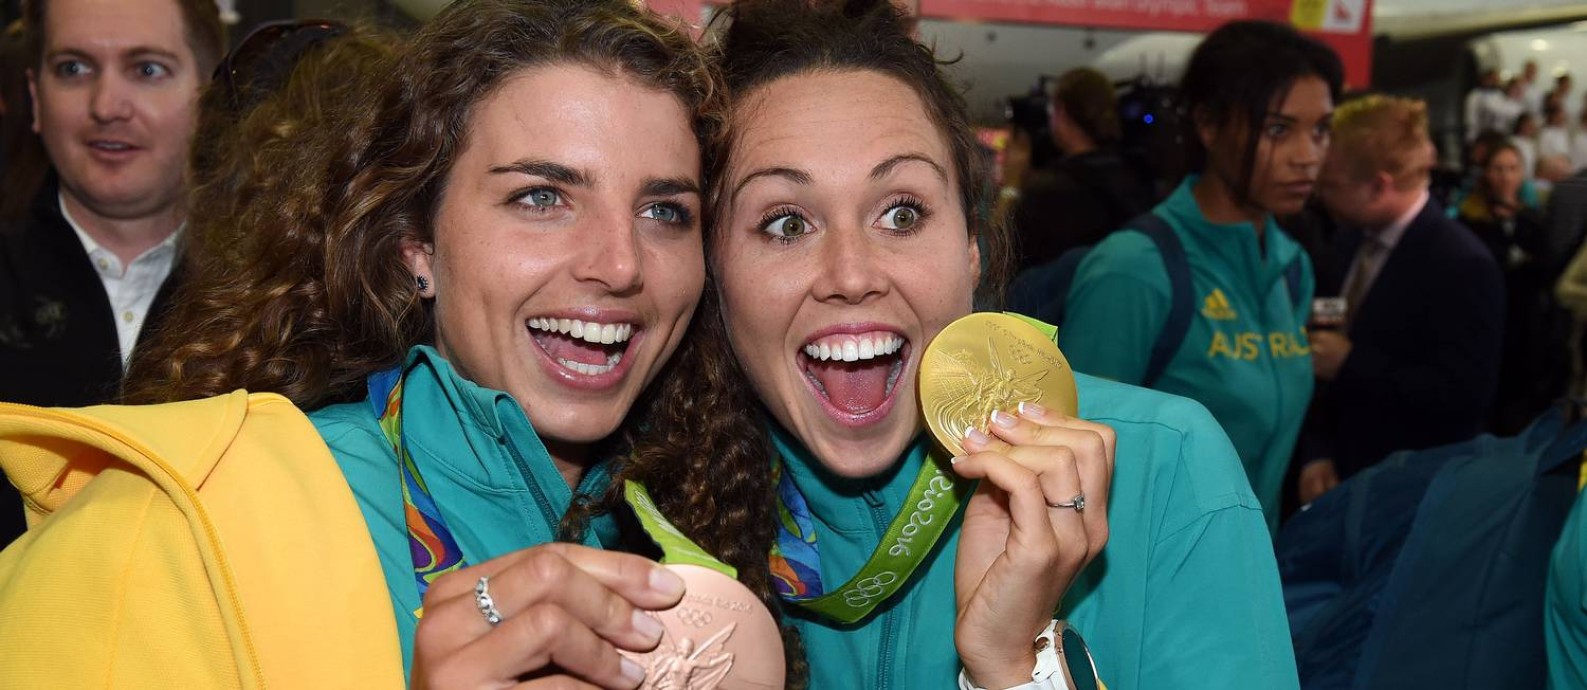 As atletas australianas Jessica Fox e Chloe Esposito exibem suas medalhas no retorno a Sydney. Muita felicidade e recomendação de sexo seguro Foto: SAEED KHAN / AFP